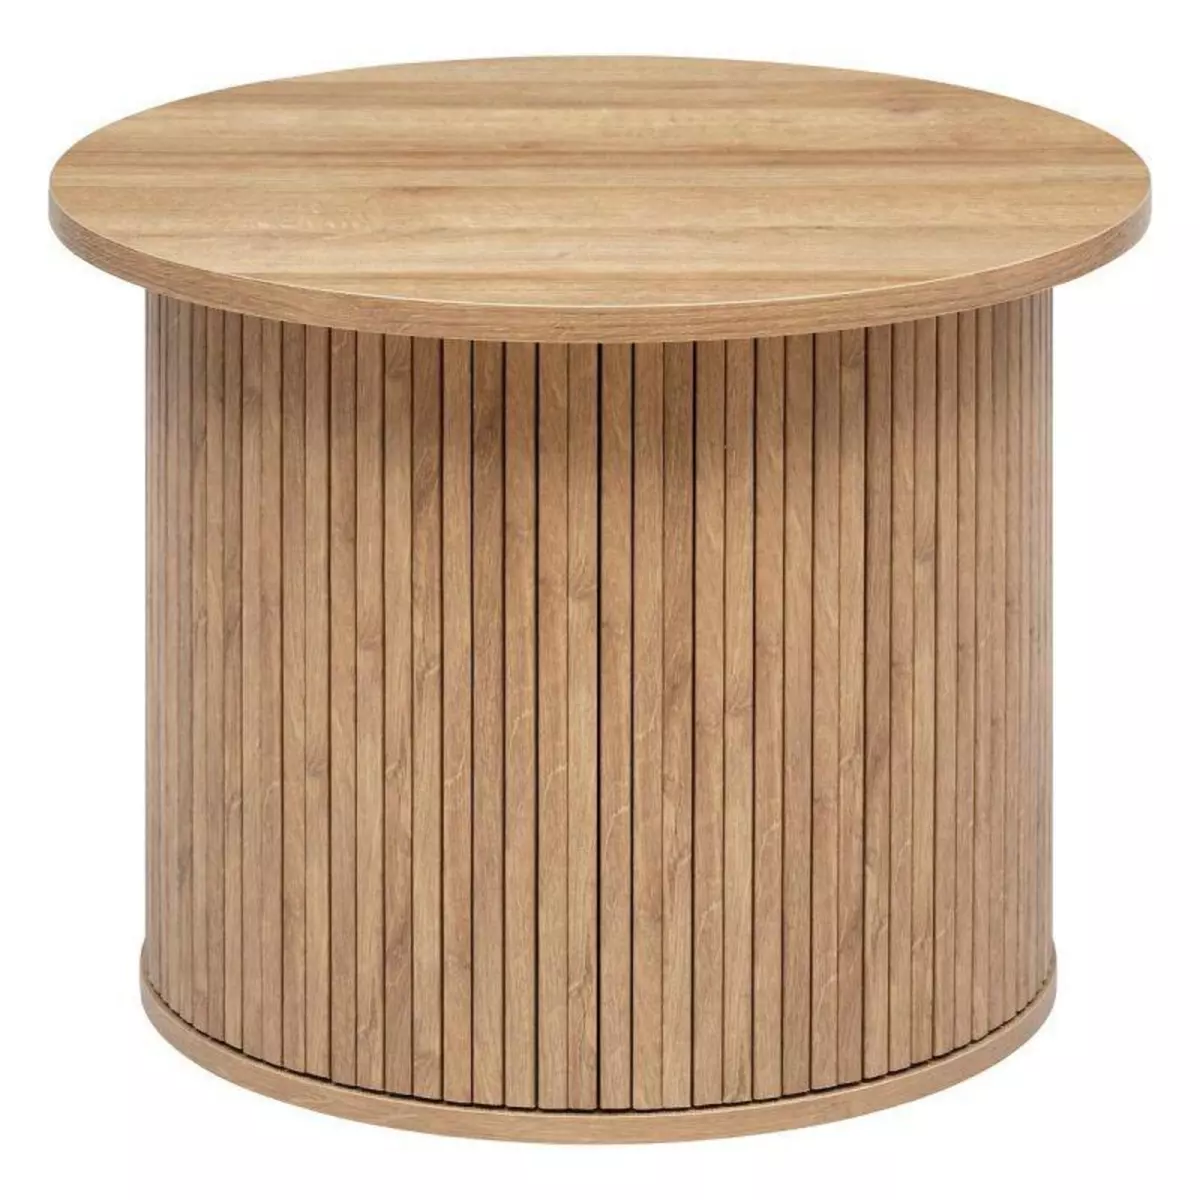  Table Basse Design  Colva  60cm Beige